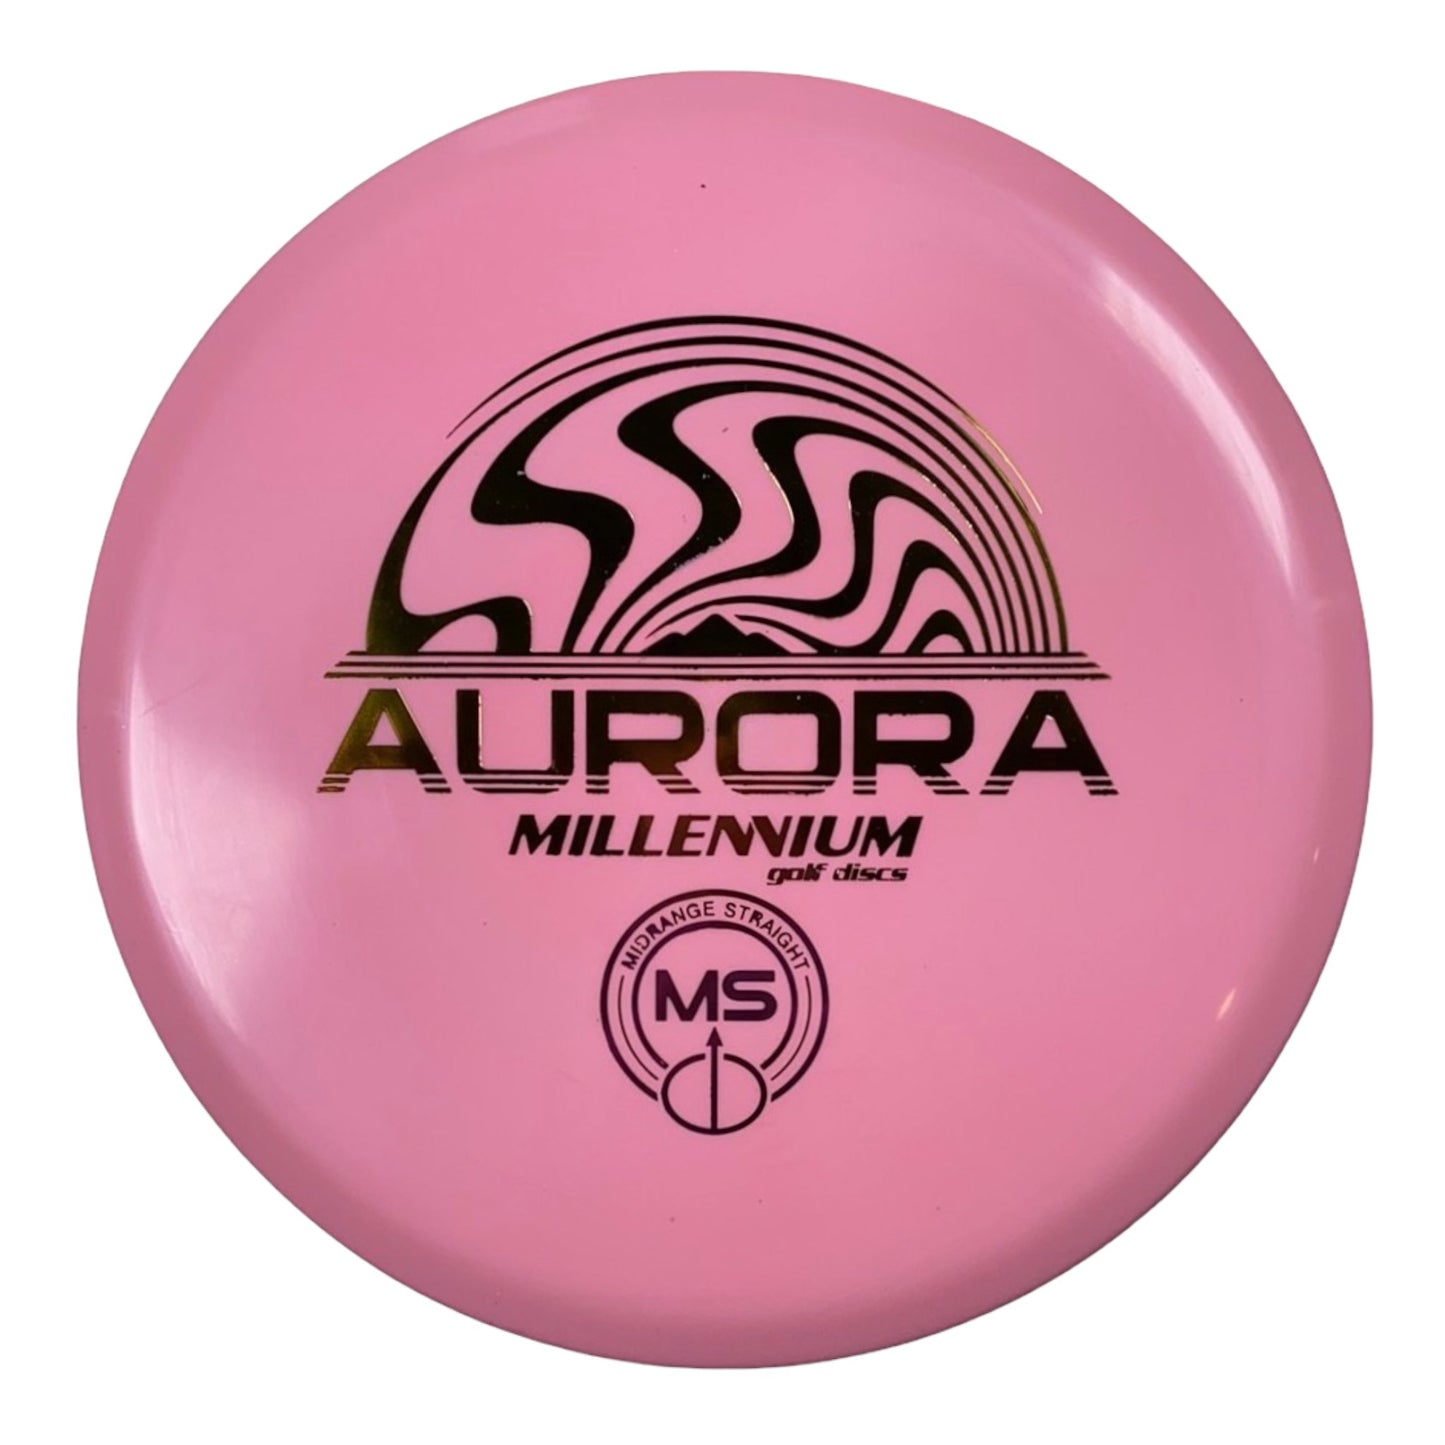 Millennium Golf Discs Aurora MS | Standard | Pink/Rainbow 172g Disc Golf